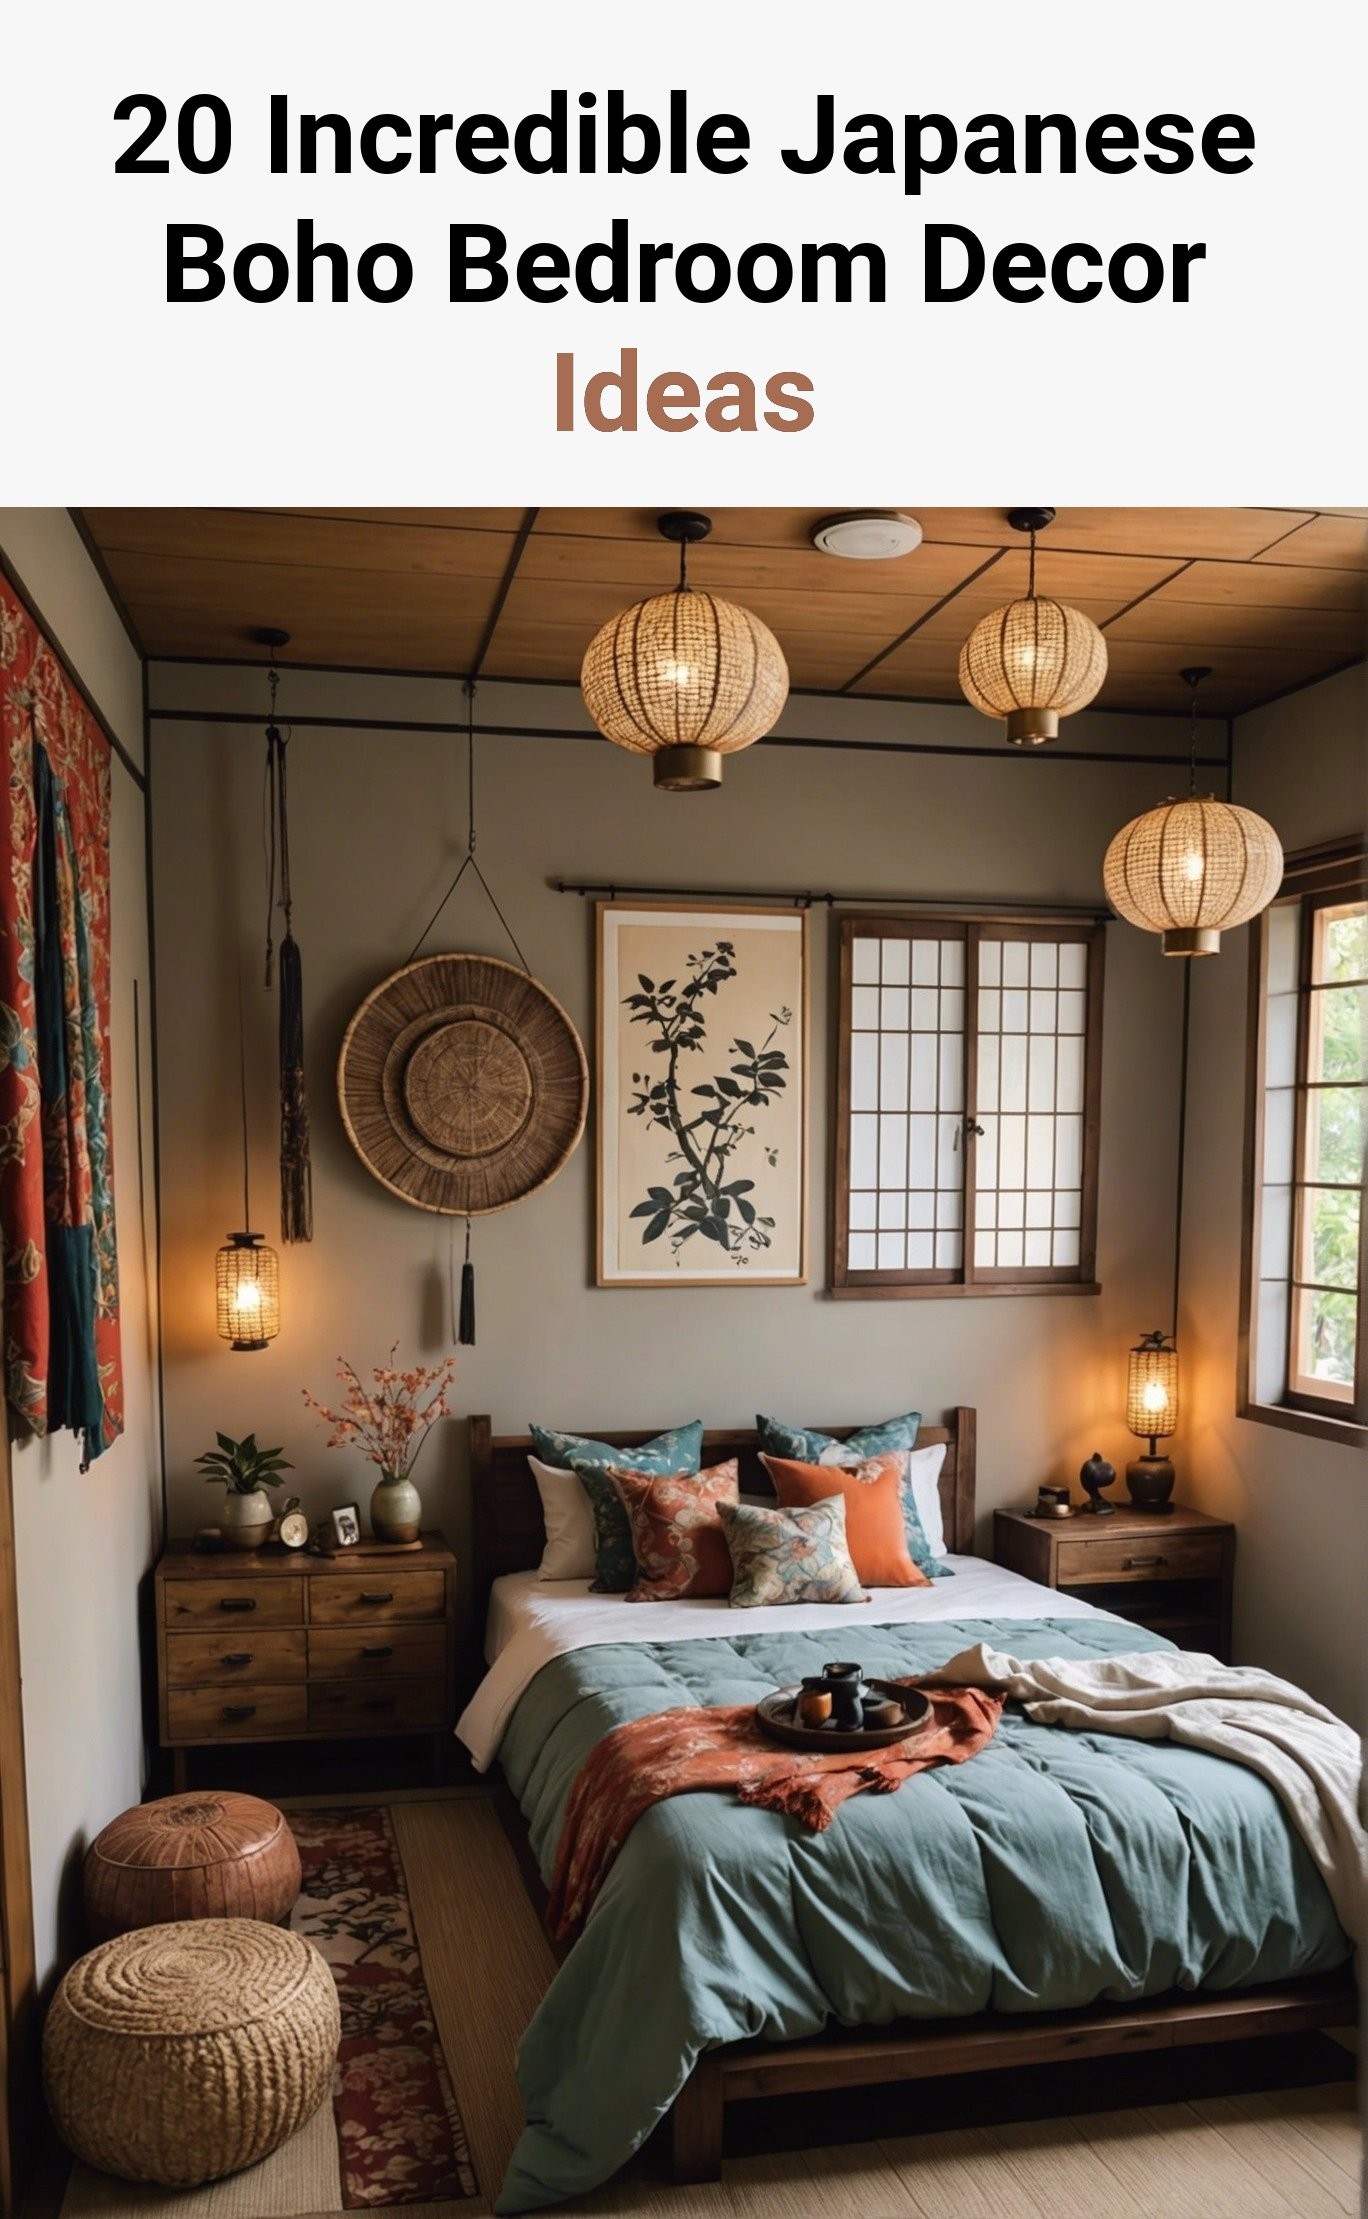 20 Incredible Japanese Boho Bedroom Decor Ideas